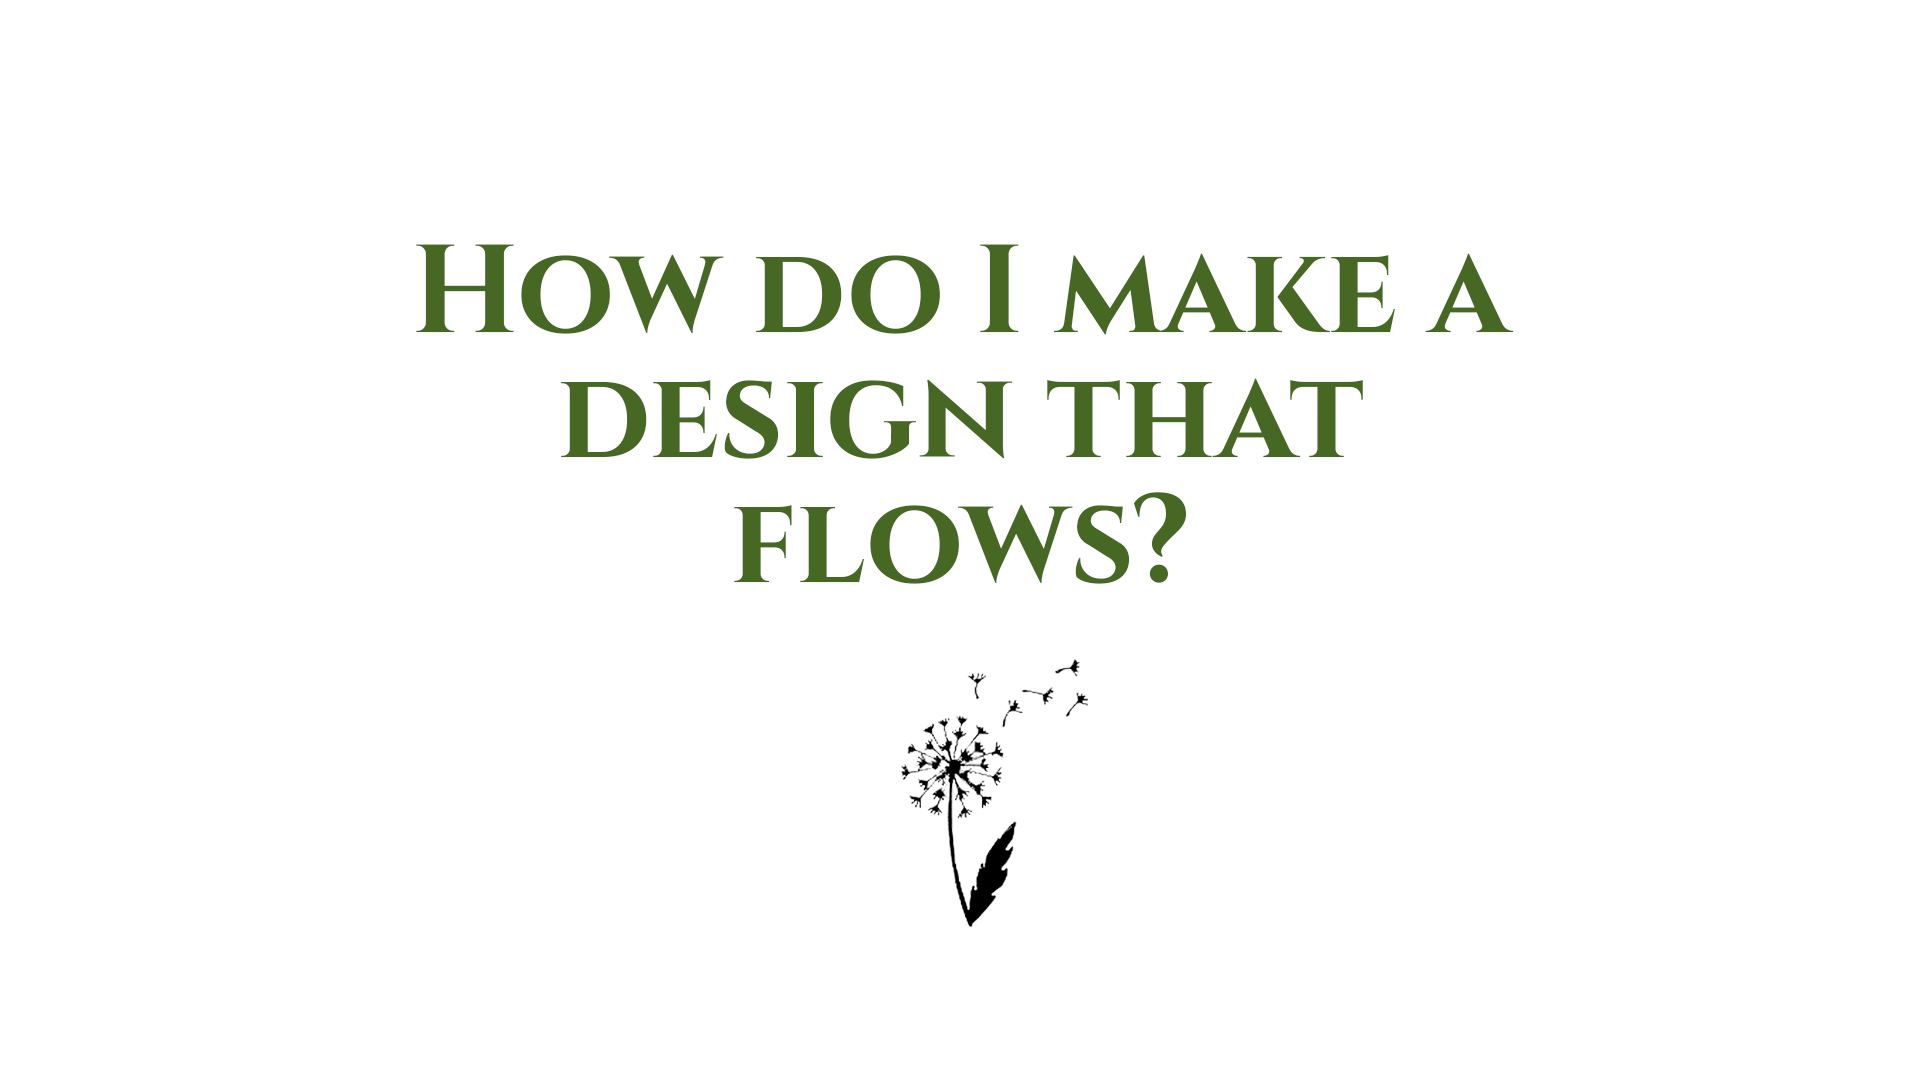 How do I make a design that flows?